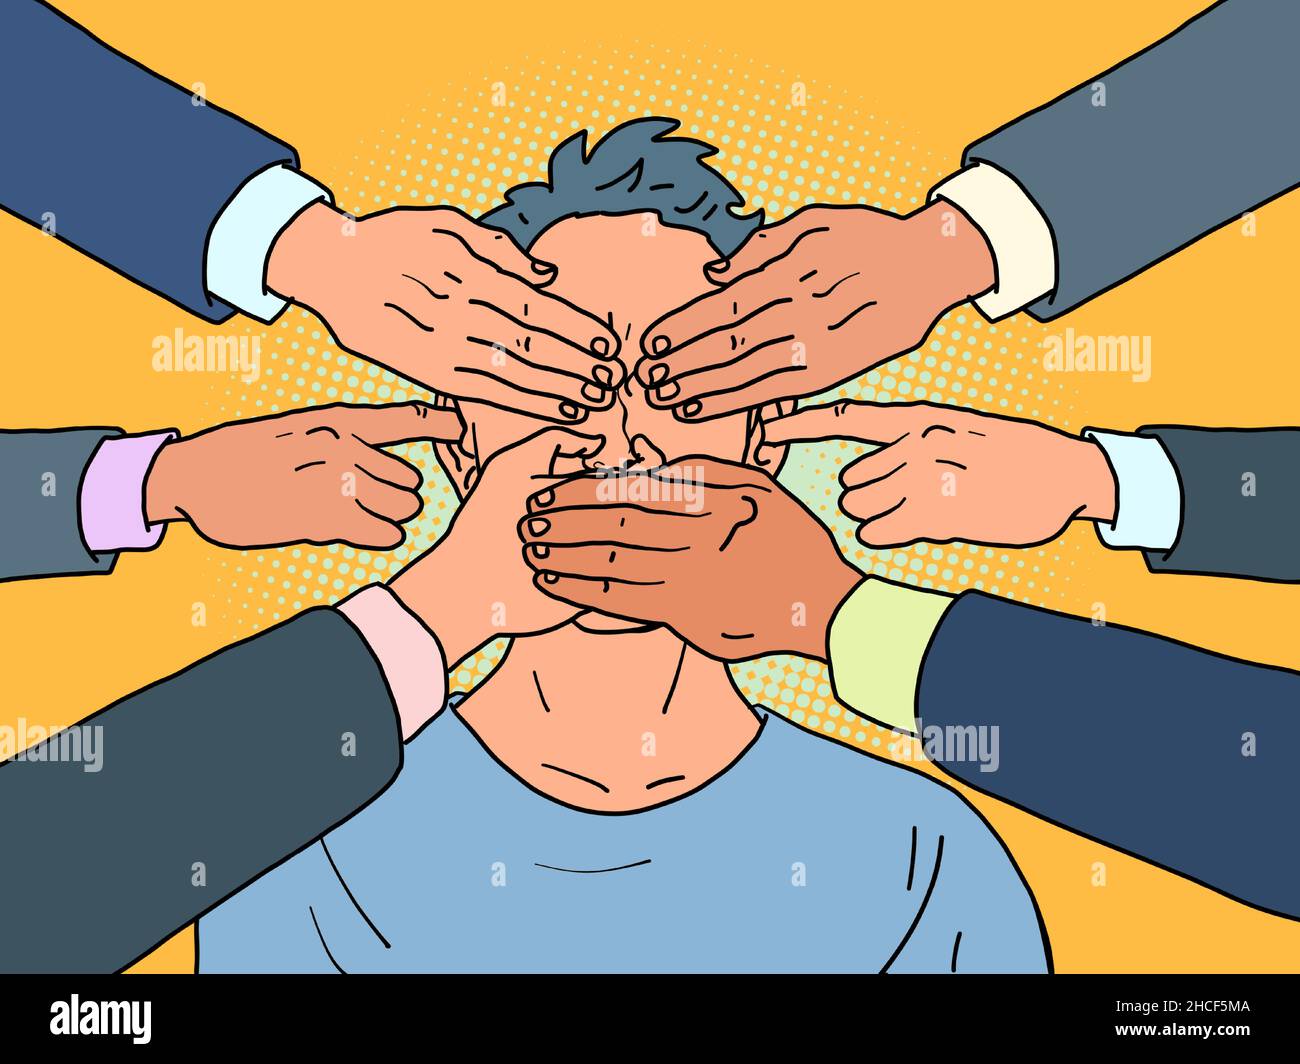 les mains couvrent les yeux, les oreilles et la bouche d'une personne, la censure et les restrictions à la liberté d'expression Illustration de Vecteur